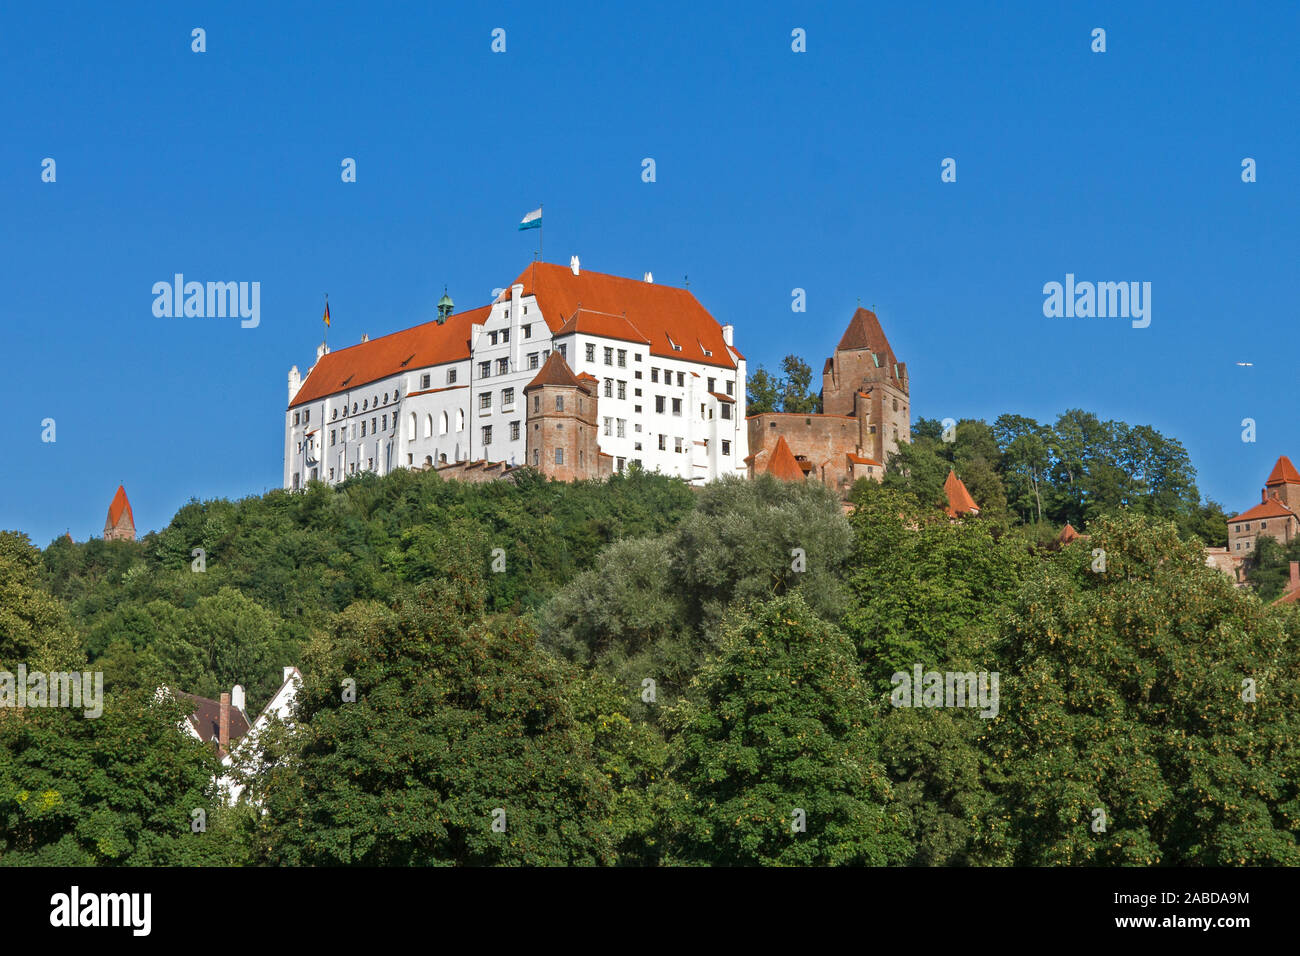 Die historische Burg Trausnitz in Landshut, Bayern, Bundesrepublik Deutschland. Stock Photo